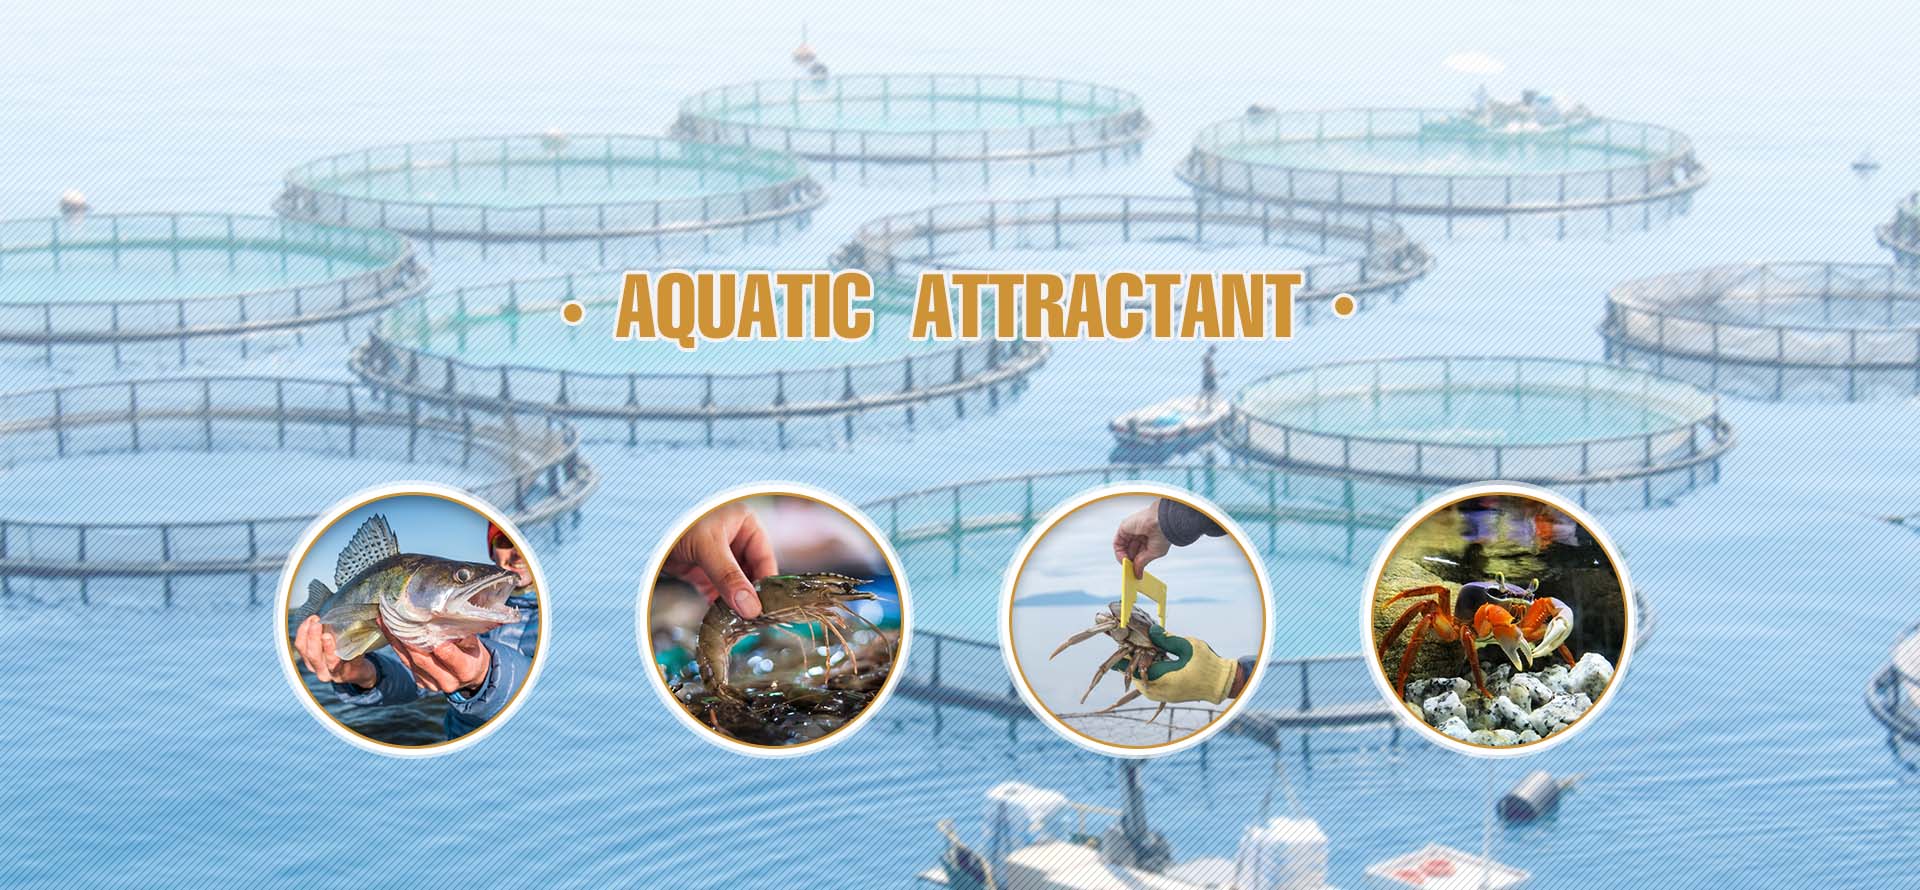 Aquatic attractant